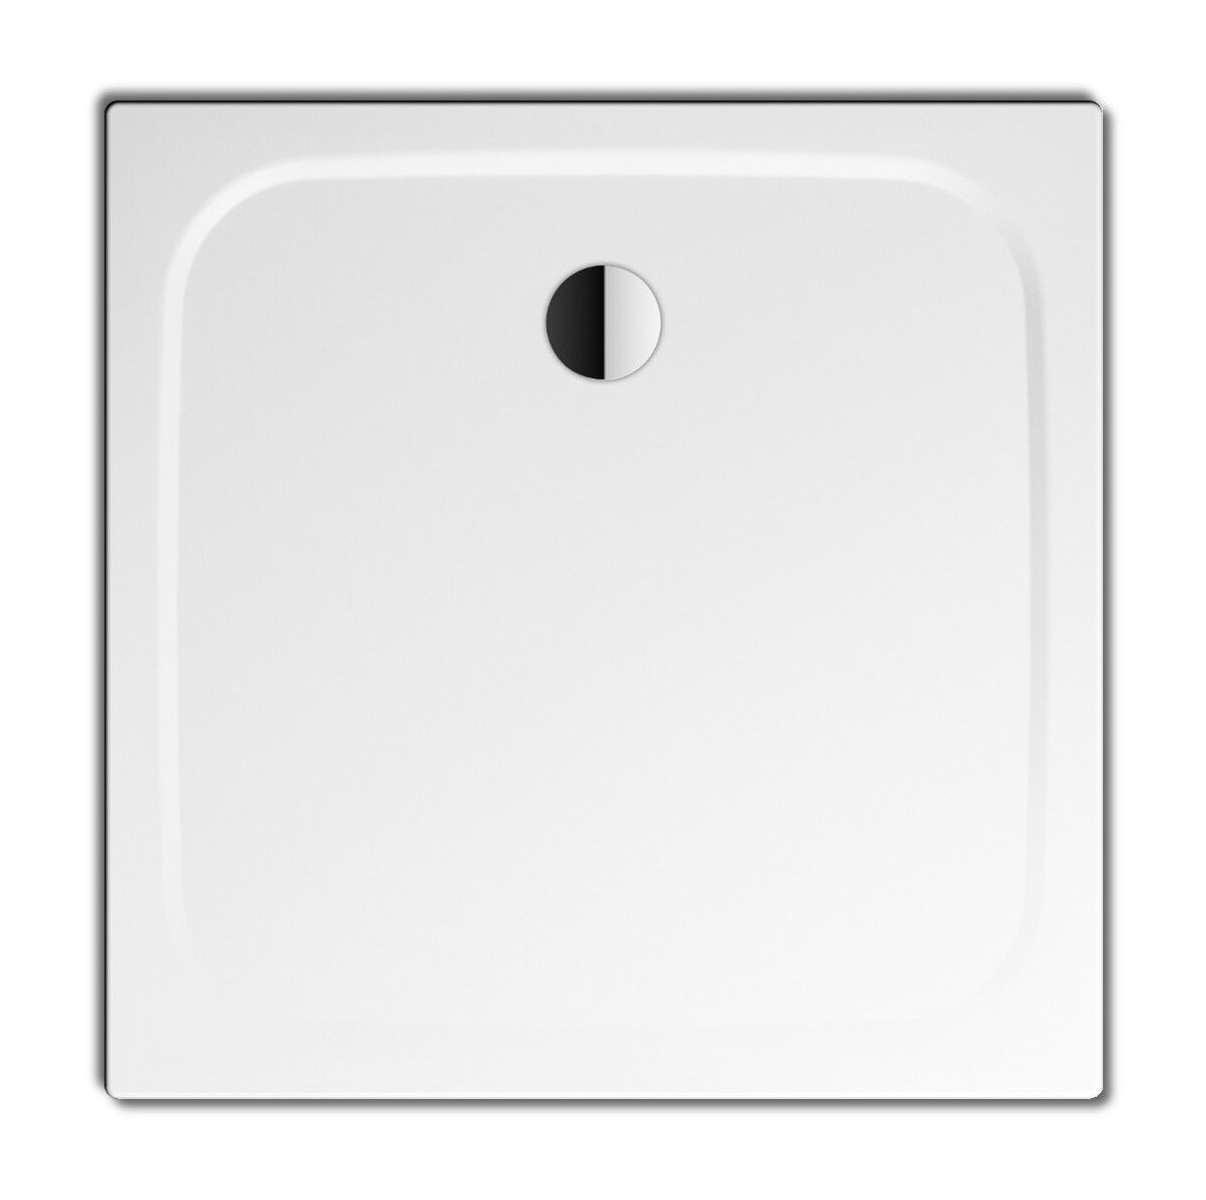 Sprchová vanička Altamira / 90 x 75 x 3,5 cm / akryl / lesklá bílá / POŠKOZENÝ OBAL